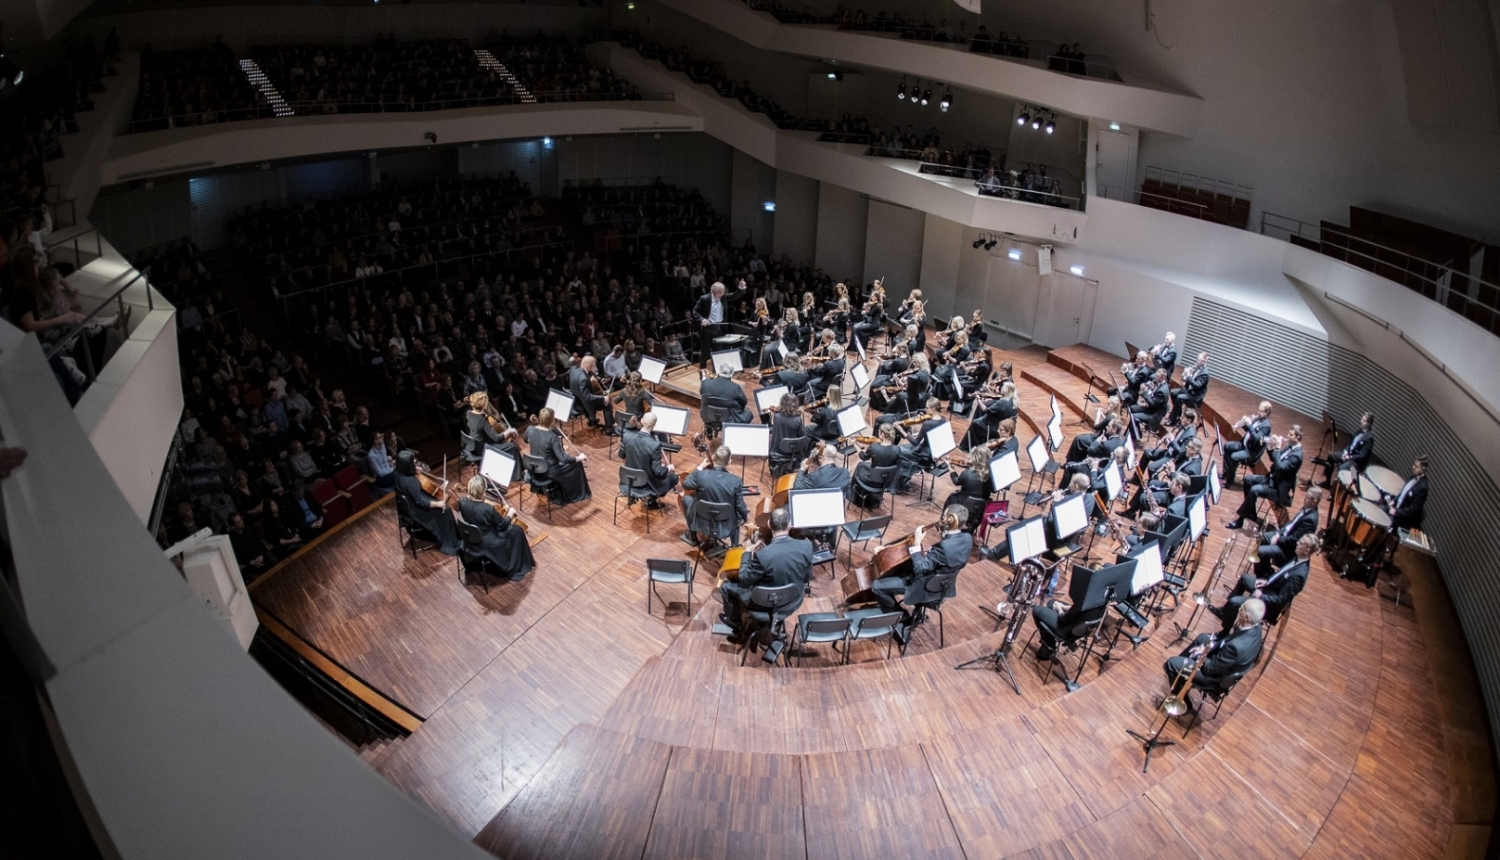 Liepājas simfoniskais orķestris un diriģents Gintars Rinkevičs, foto: Jānis Vecbrālis.